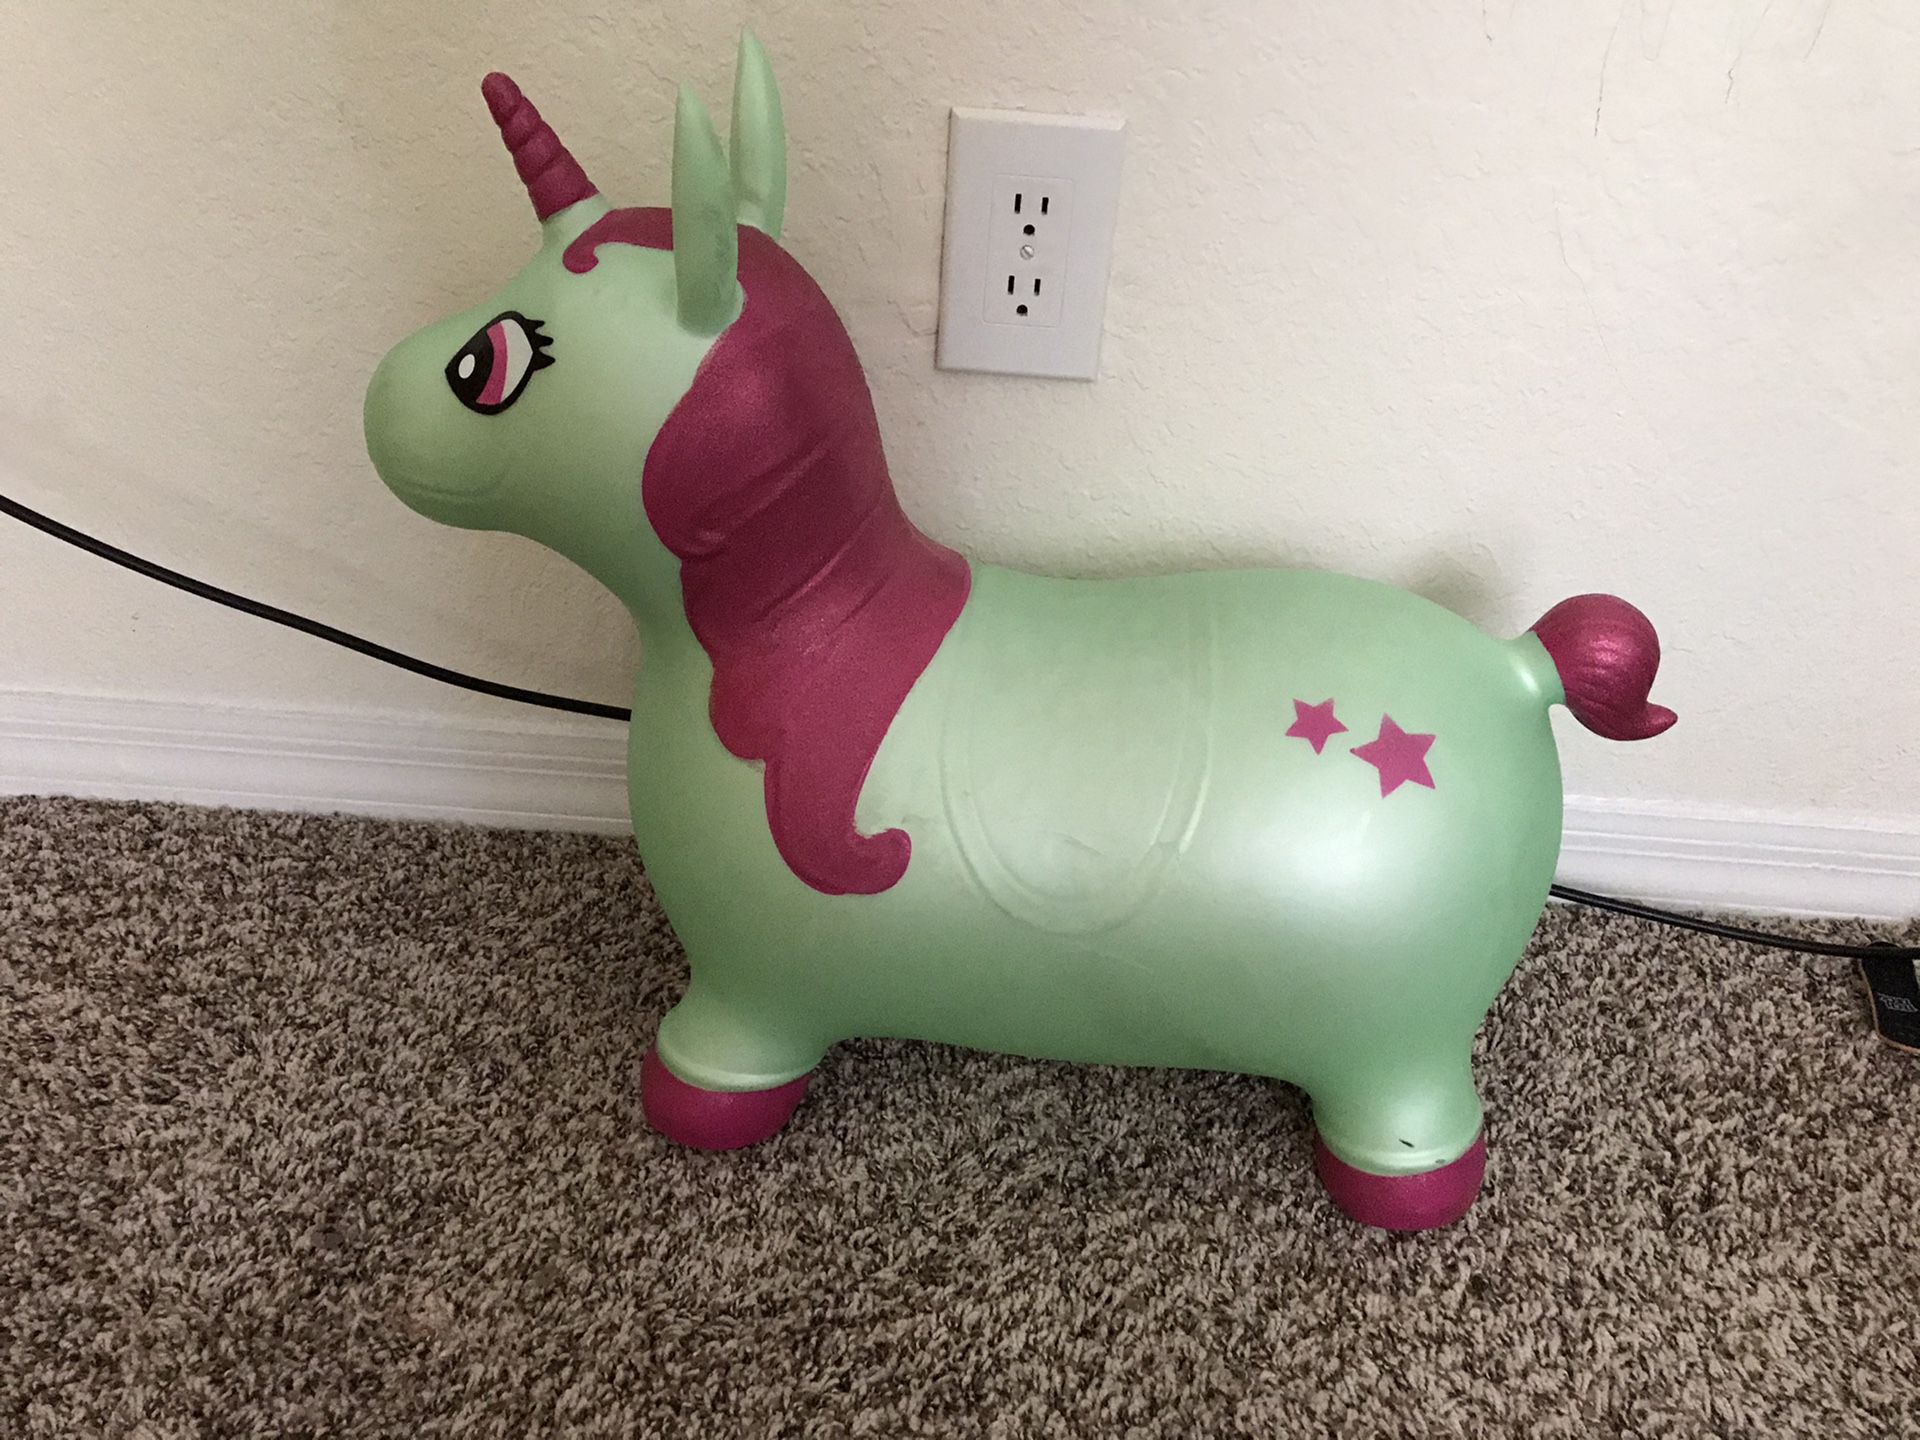 Unicorn waddle for kids